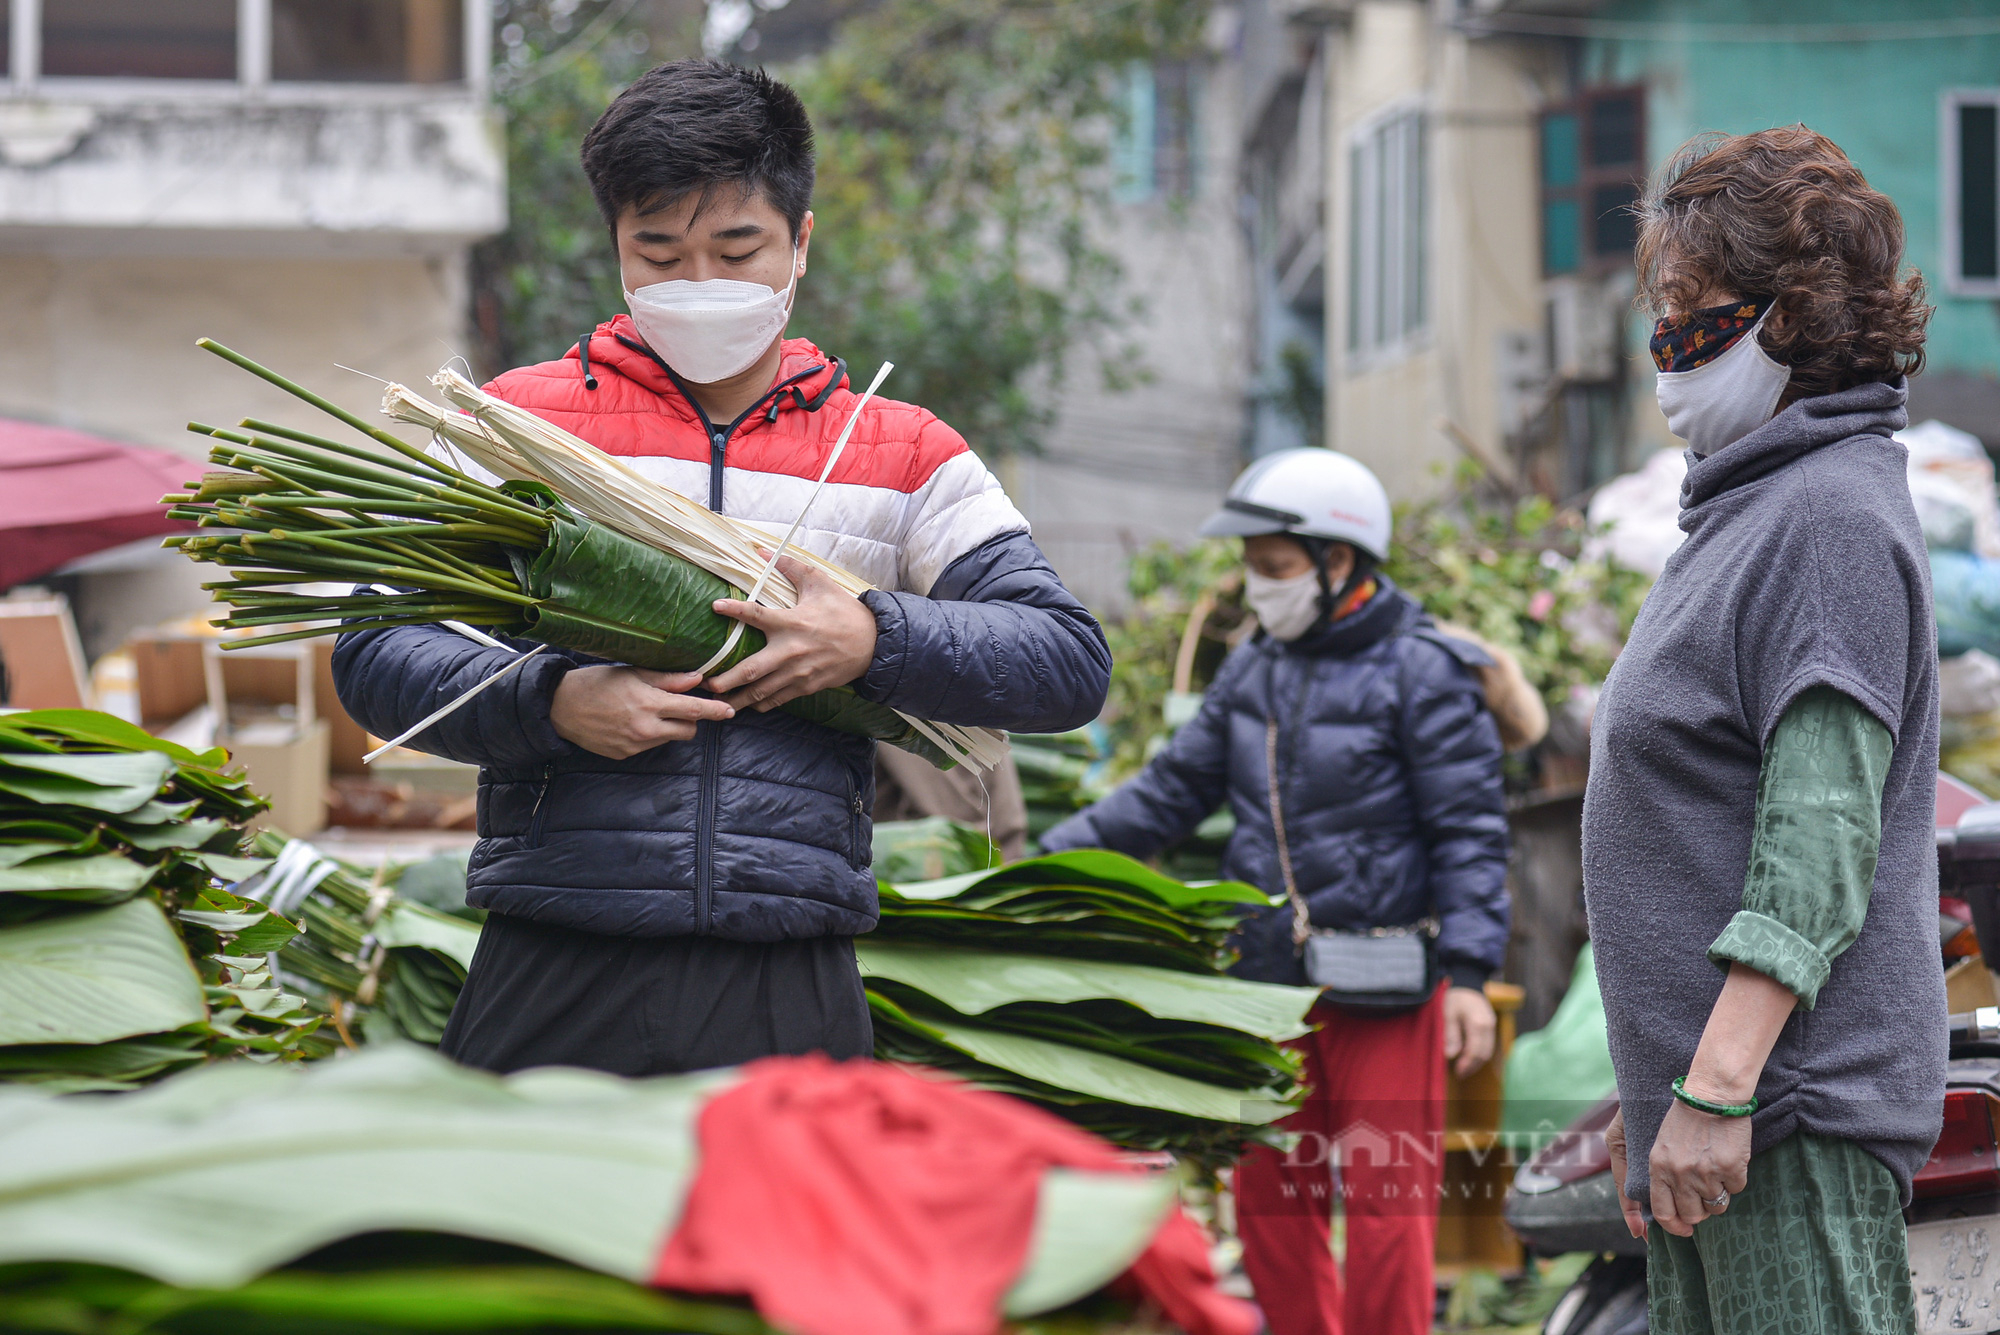  Chợ lá dong lâu đời ở Hà Nội dù vắng khách nhưng giá vẫn cao - Ảnh 2.